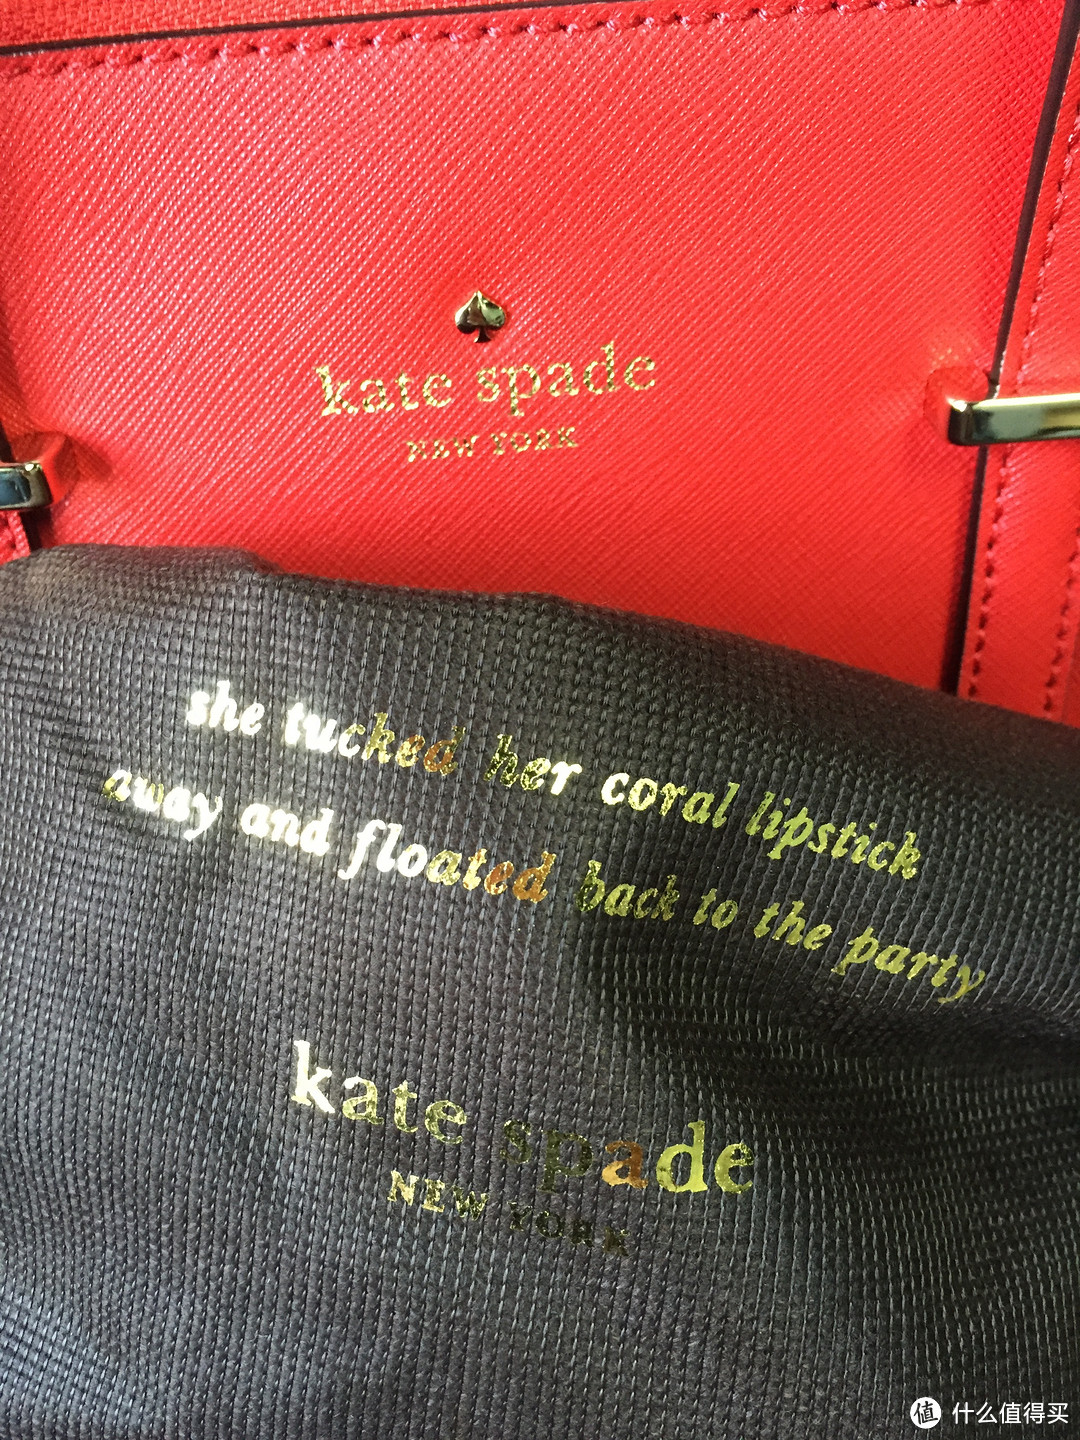 原来你这么美——Kate Spade 女士包包